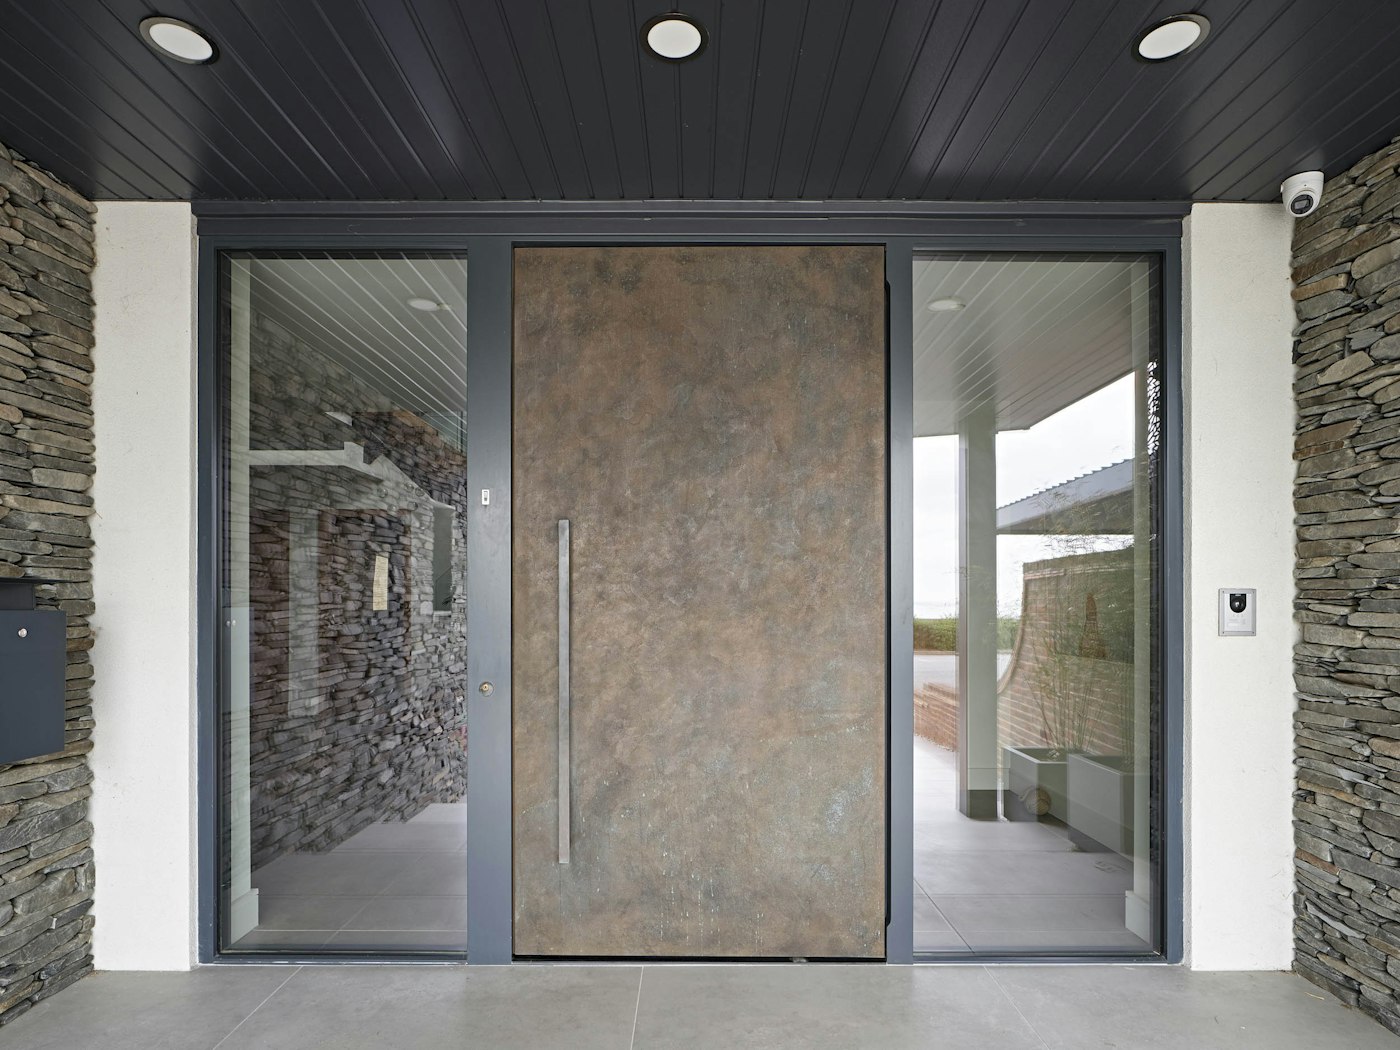 Urban Front's oversized bronze metallic front door makes an imposing statement